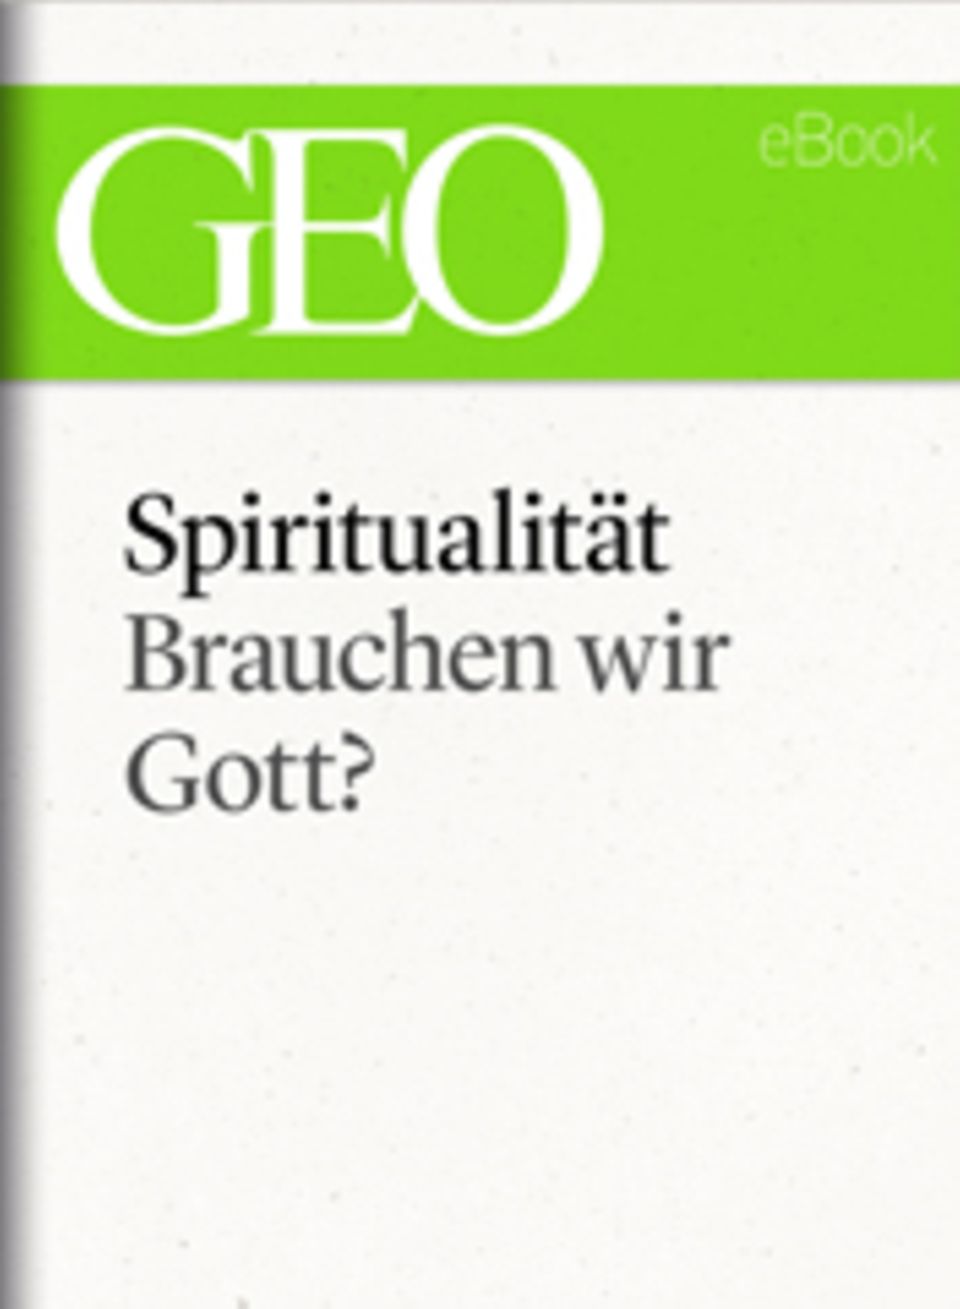 Brauchen wir Gott?: GEO eBook "Spiritualität"